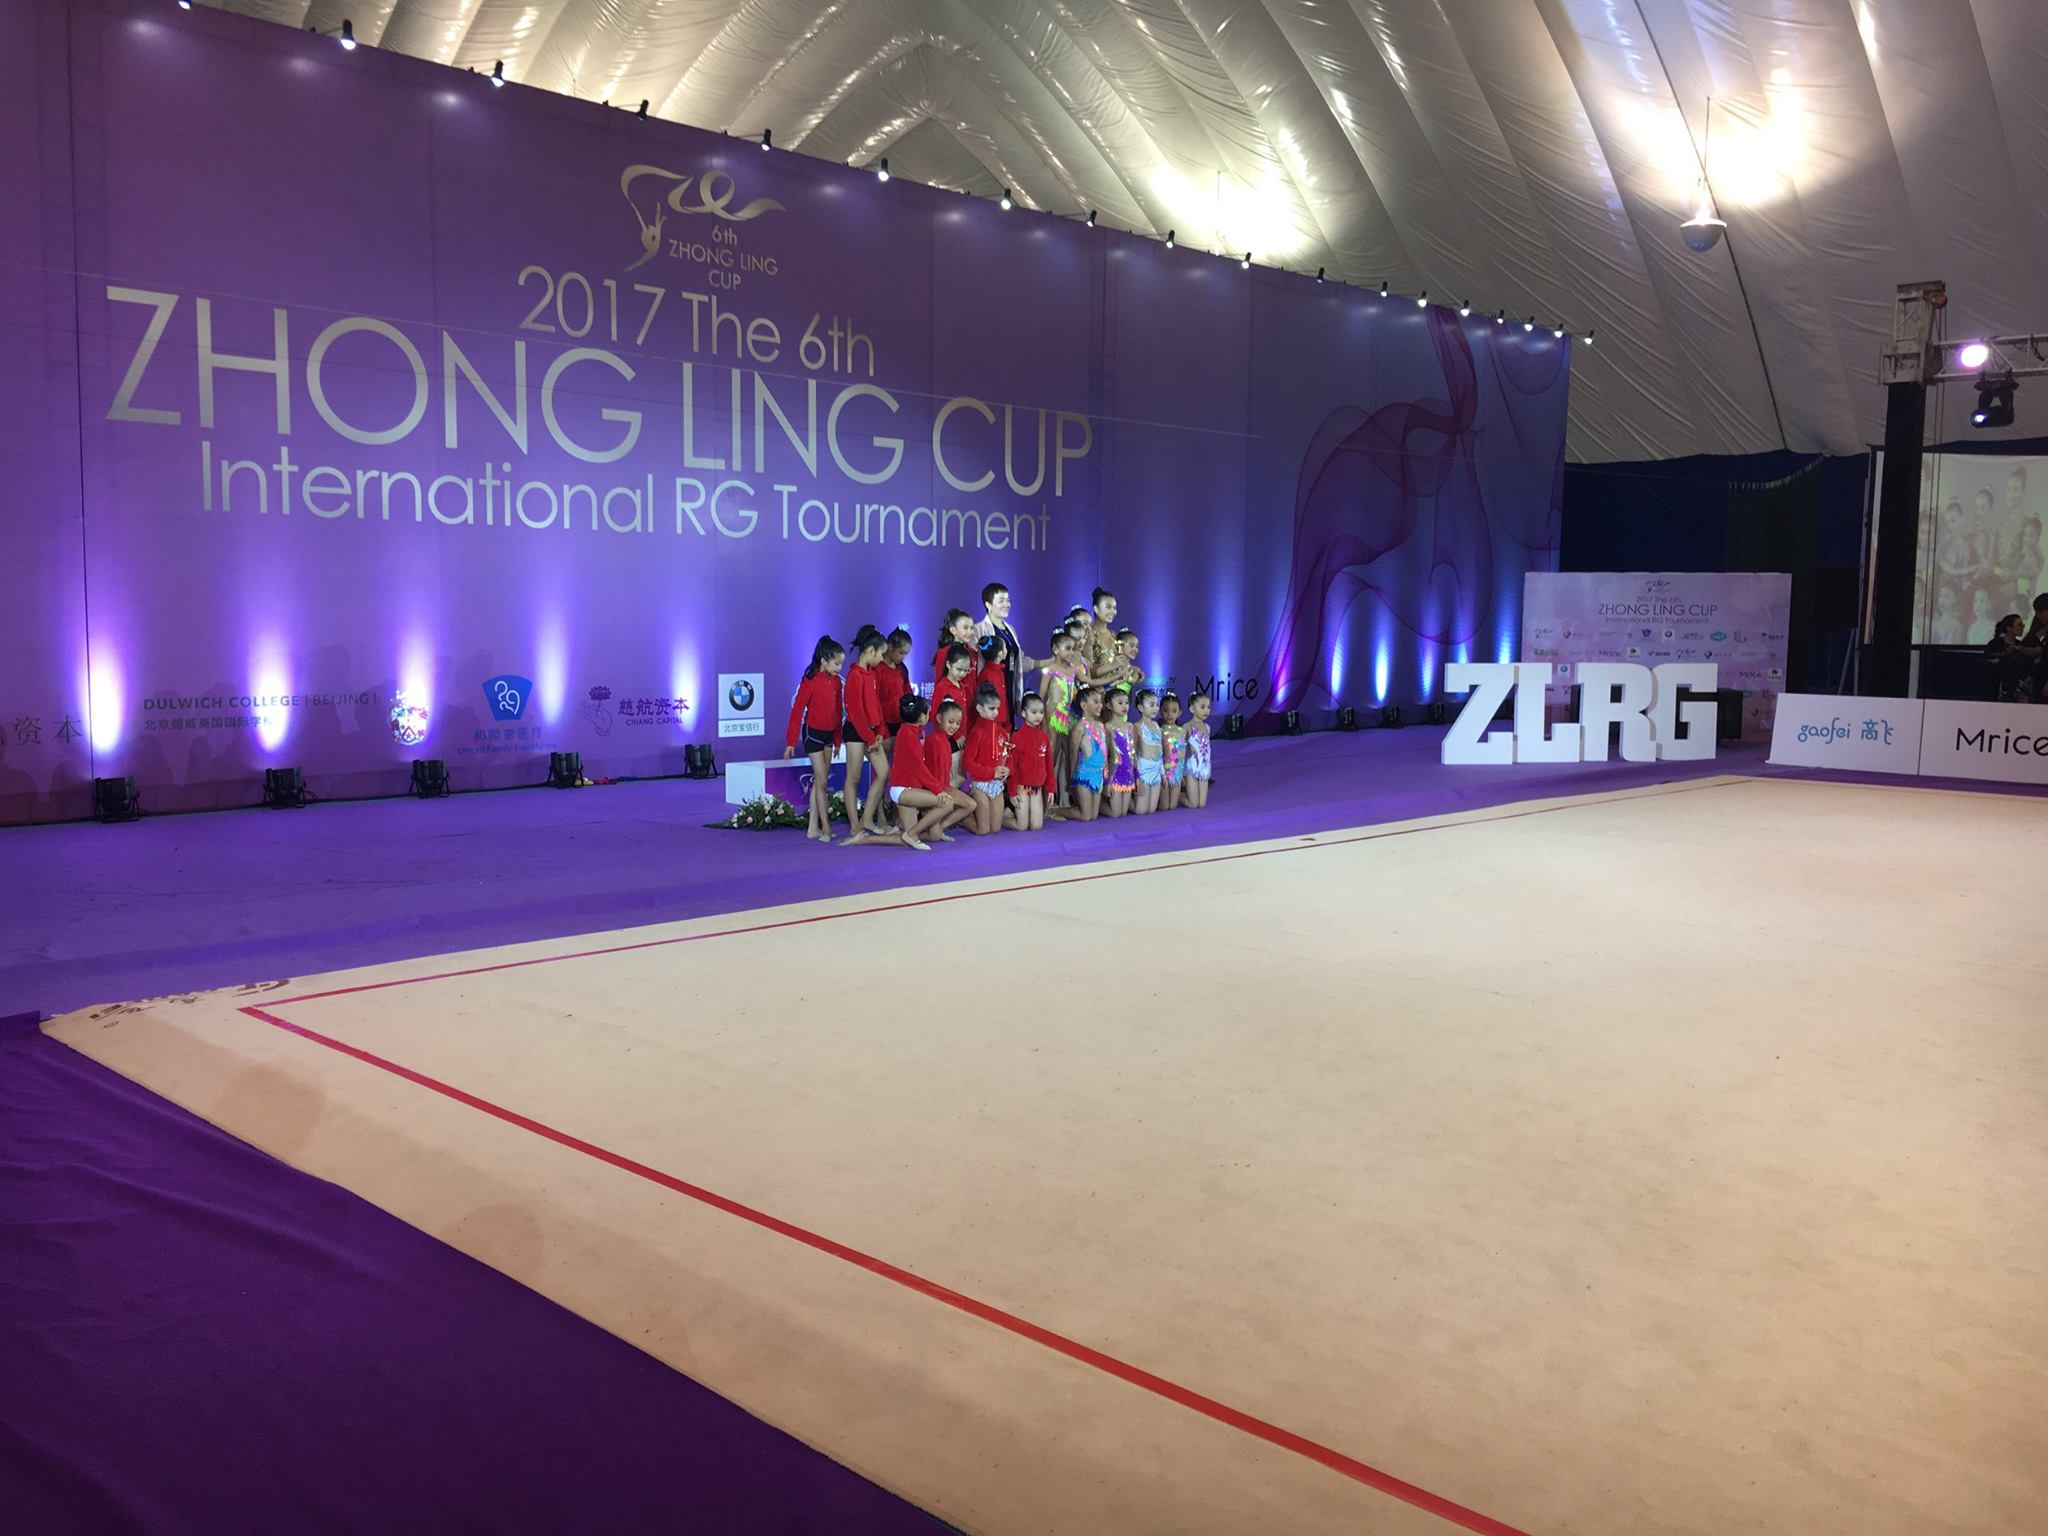 6th Zhong Ling Cup 2017 24